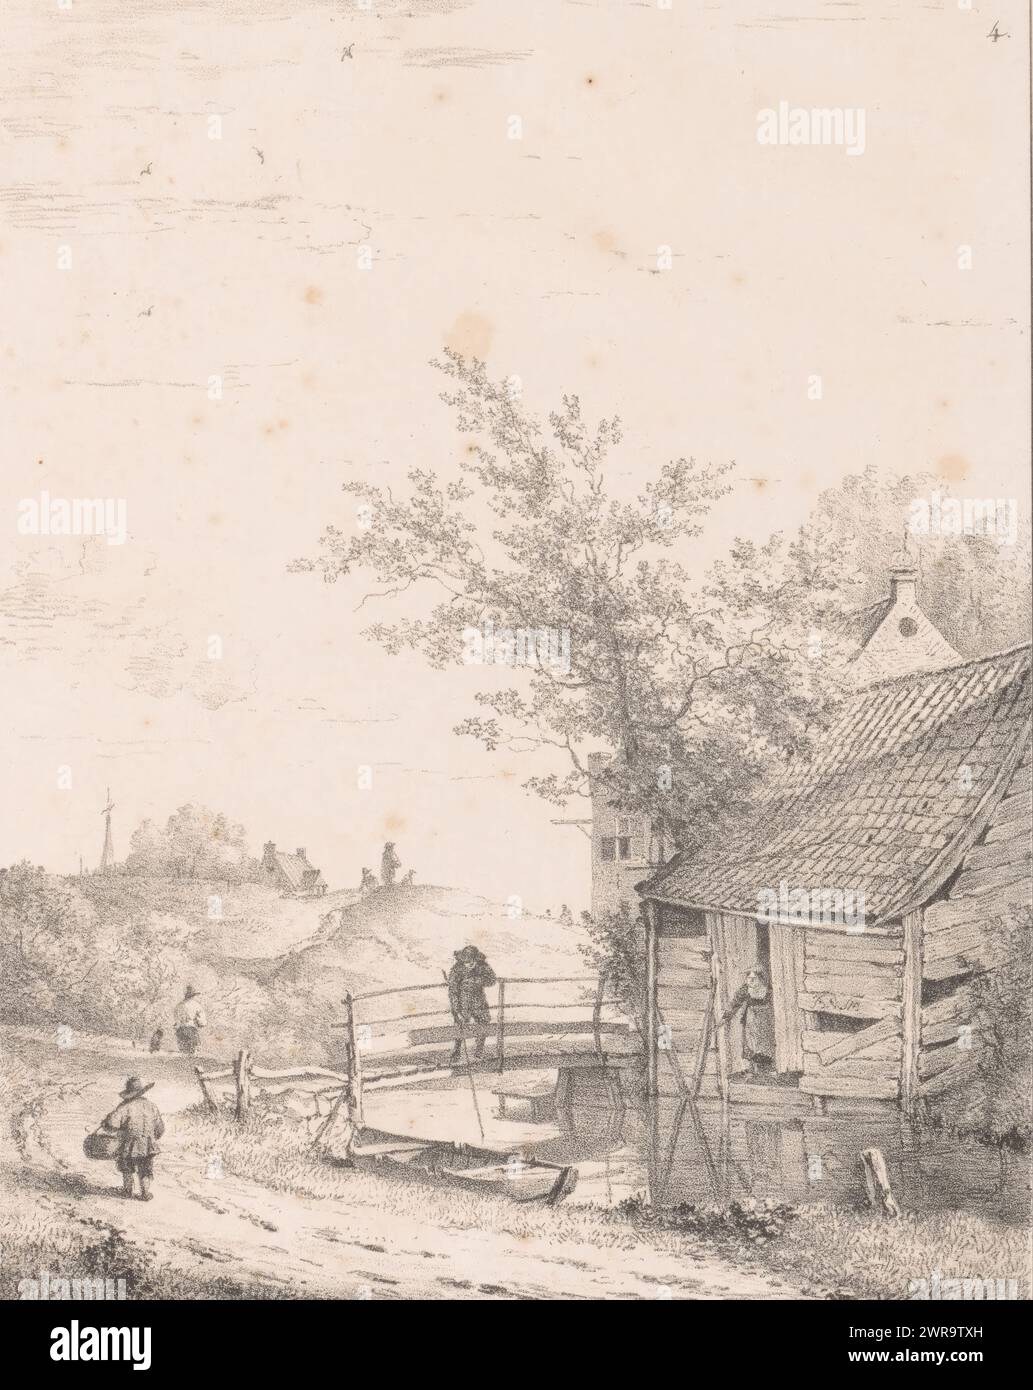 Paisaje con río y granero, Paisajes (título de la serie), Paisaje con río. Un puente de madera sobre el río en el que un hombre está pescando. A la derecha de ella es un granero con una mujer en la puerta. A la izquierda un camino por el que camina una figura con una cesta en el brazo. Colinas y una granja a la izquierda en la distancia., impresor: Bruno van Straaten (I), impresor: Johannes Paulus Houtman, editor: Johannes Paulus Houtman, Utrecht, c. 1858 - c. 1859, papel, altura 378 mm x ancho 268 mm, impresión Foto de stock